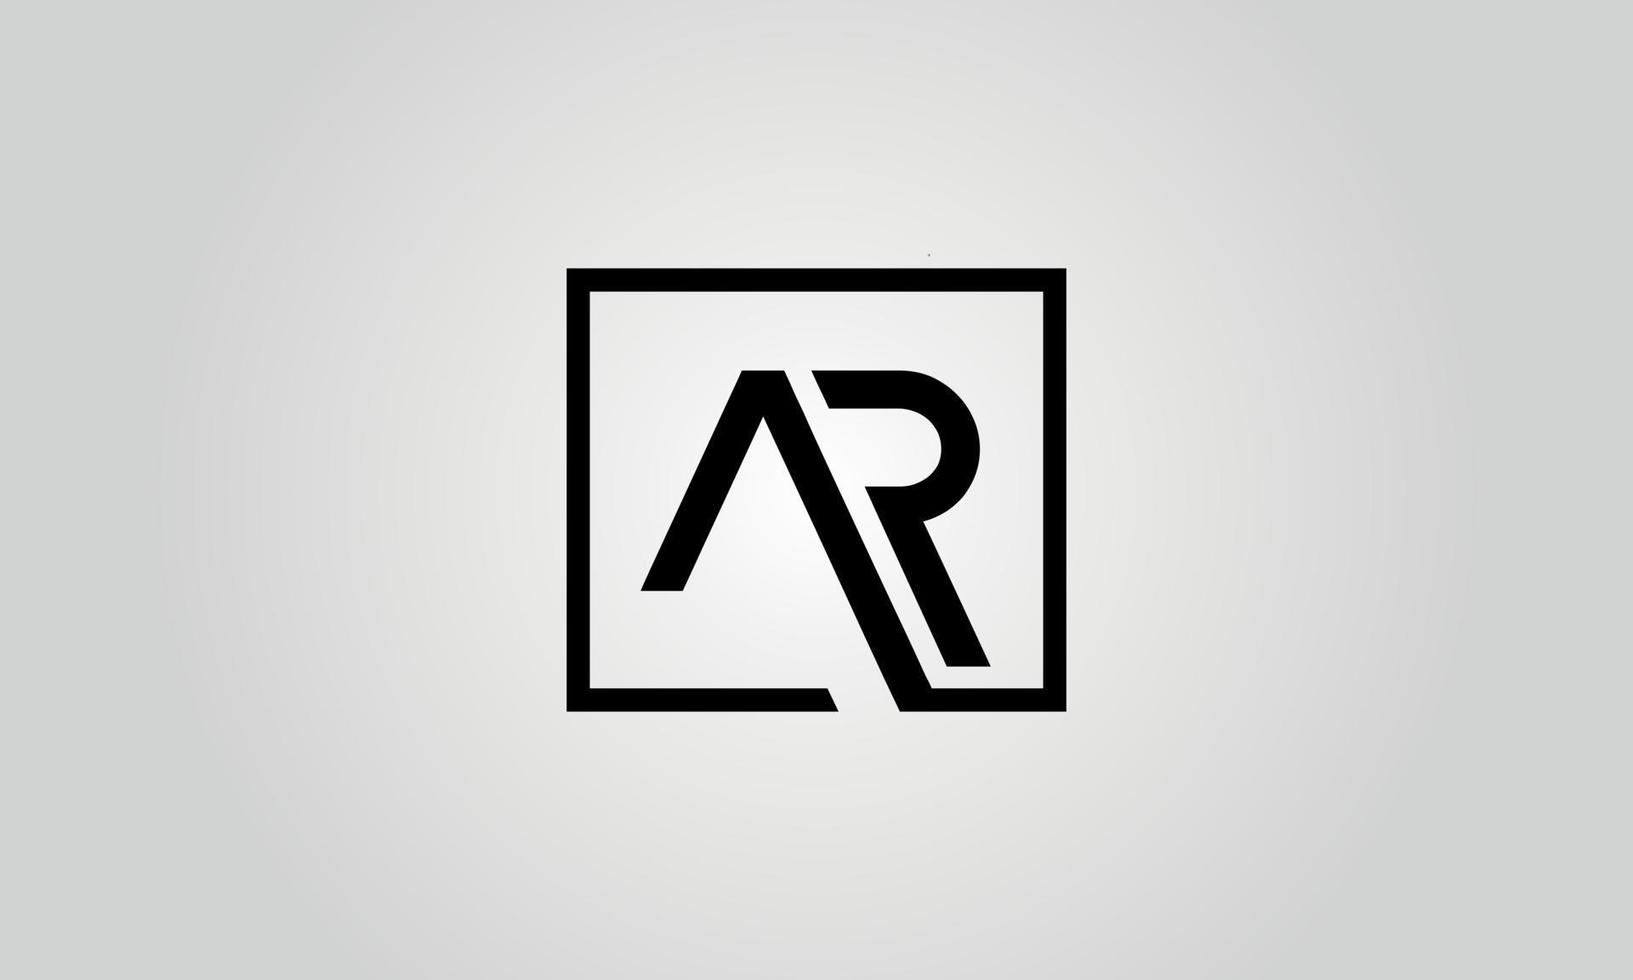 diseño de logotipo ar. plantilla de vector libre de diseño de icono de logotipo de letra ar inicial.